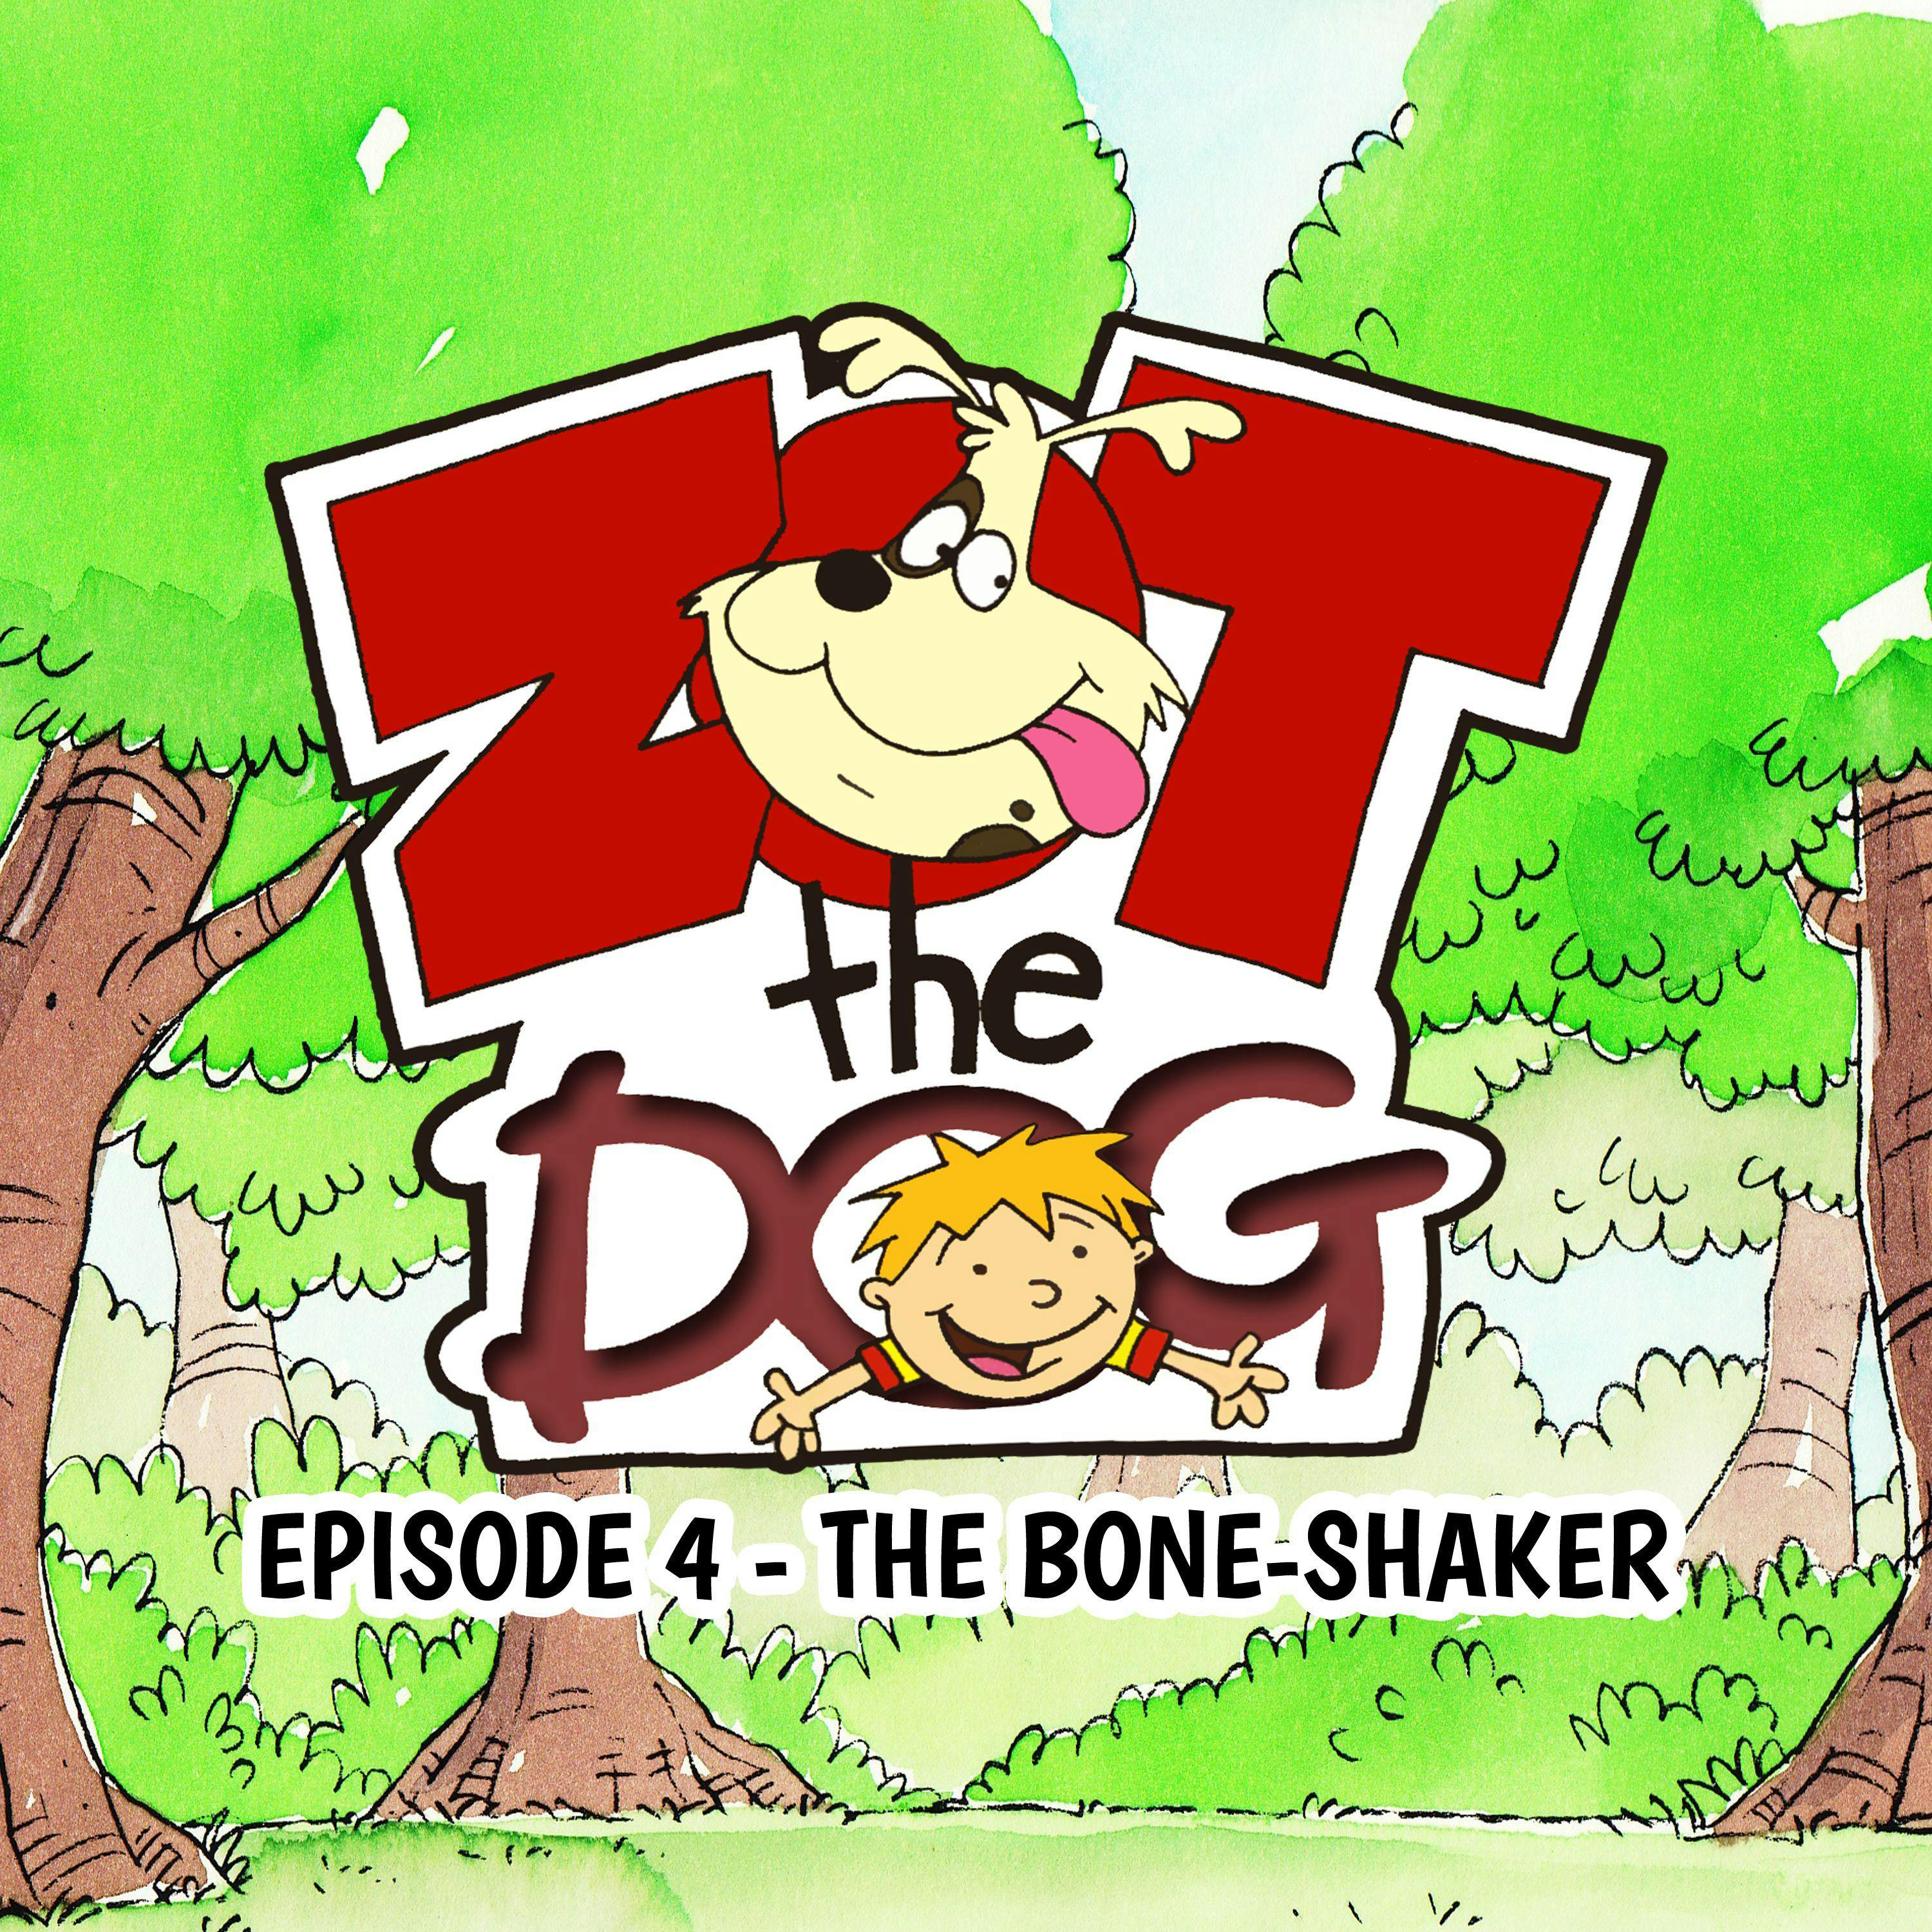 Zot the Dog: Episode 4 - The Bone-Shaker - Ivan Jones